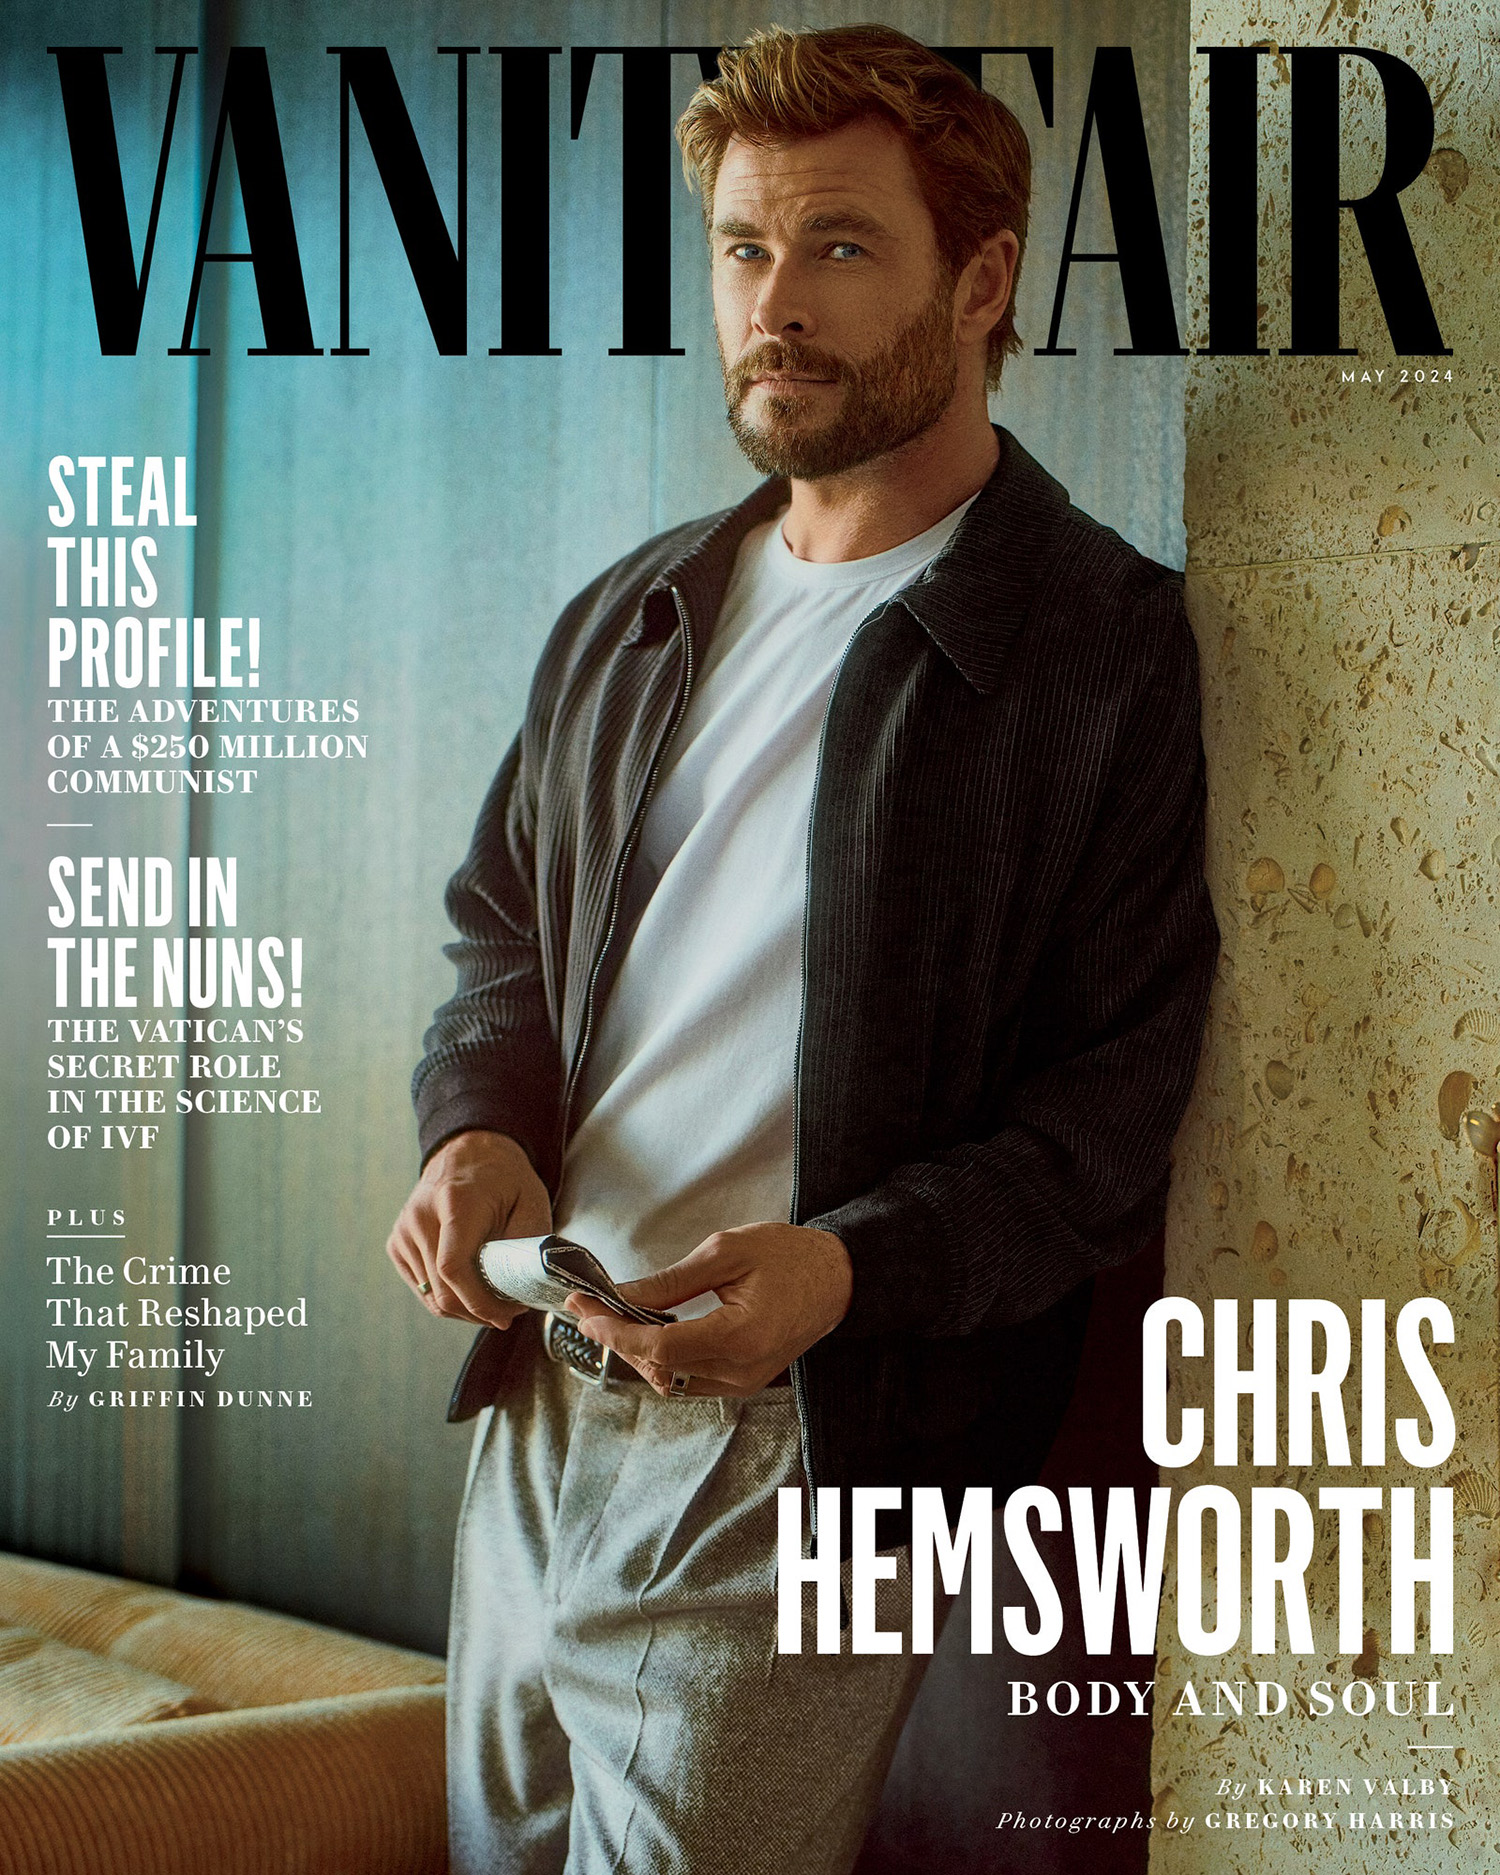 Chris Hemsworth covers Vanity Fair May 2024 by Gregory Harris